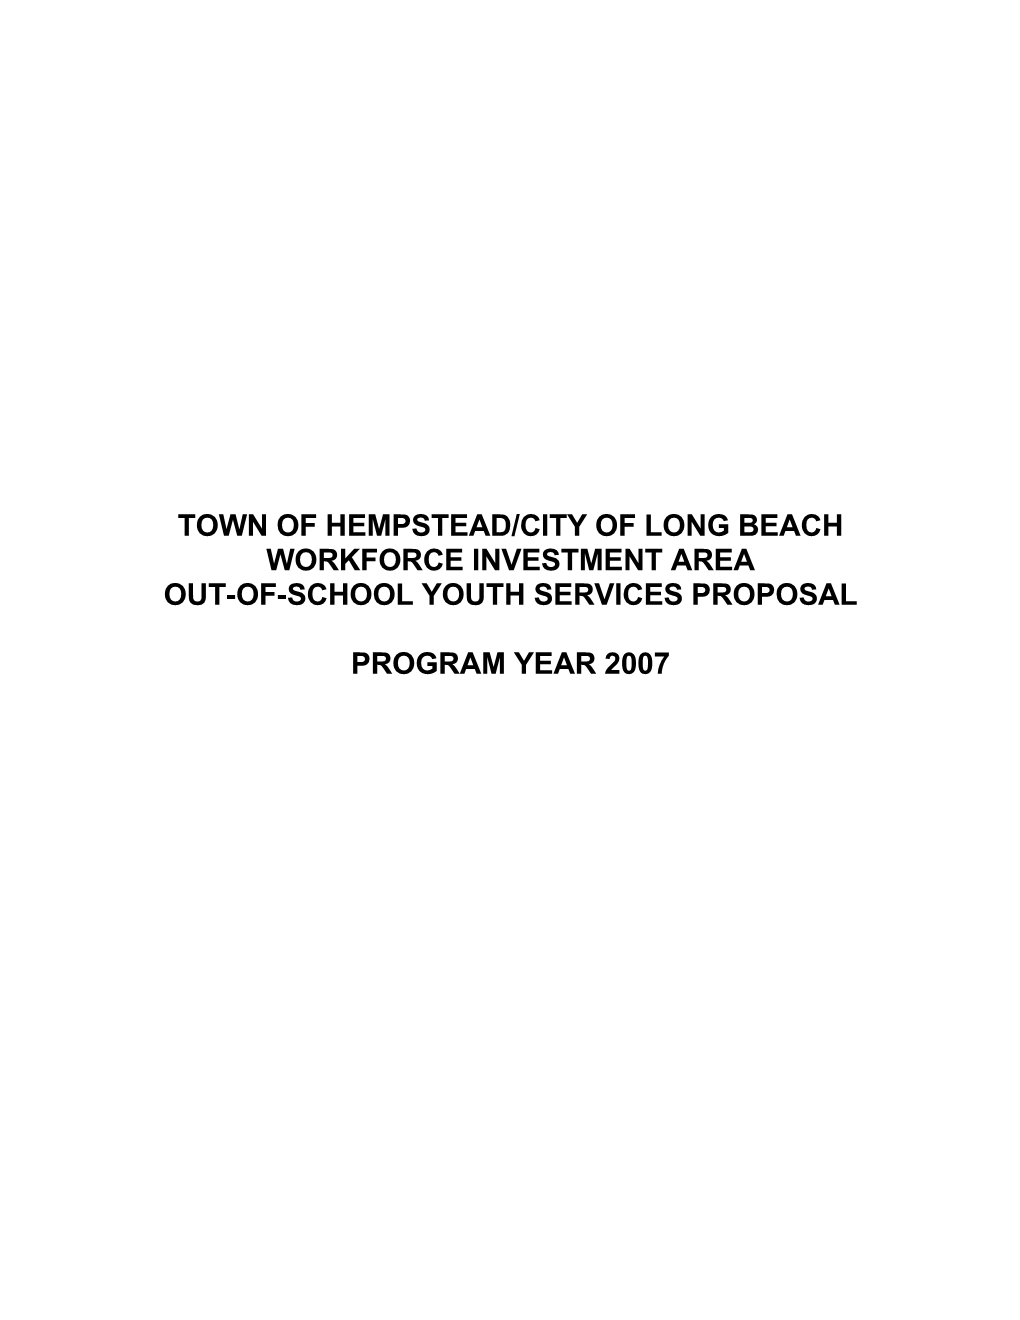 Town of Hempstead/City of Long Beach